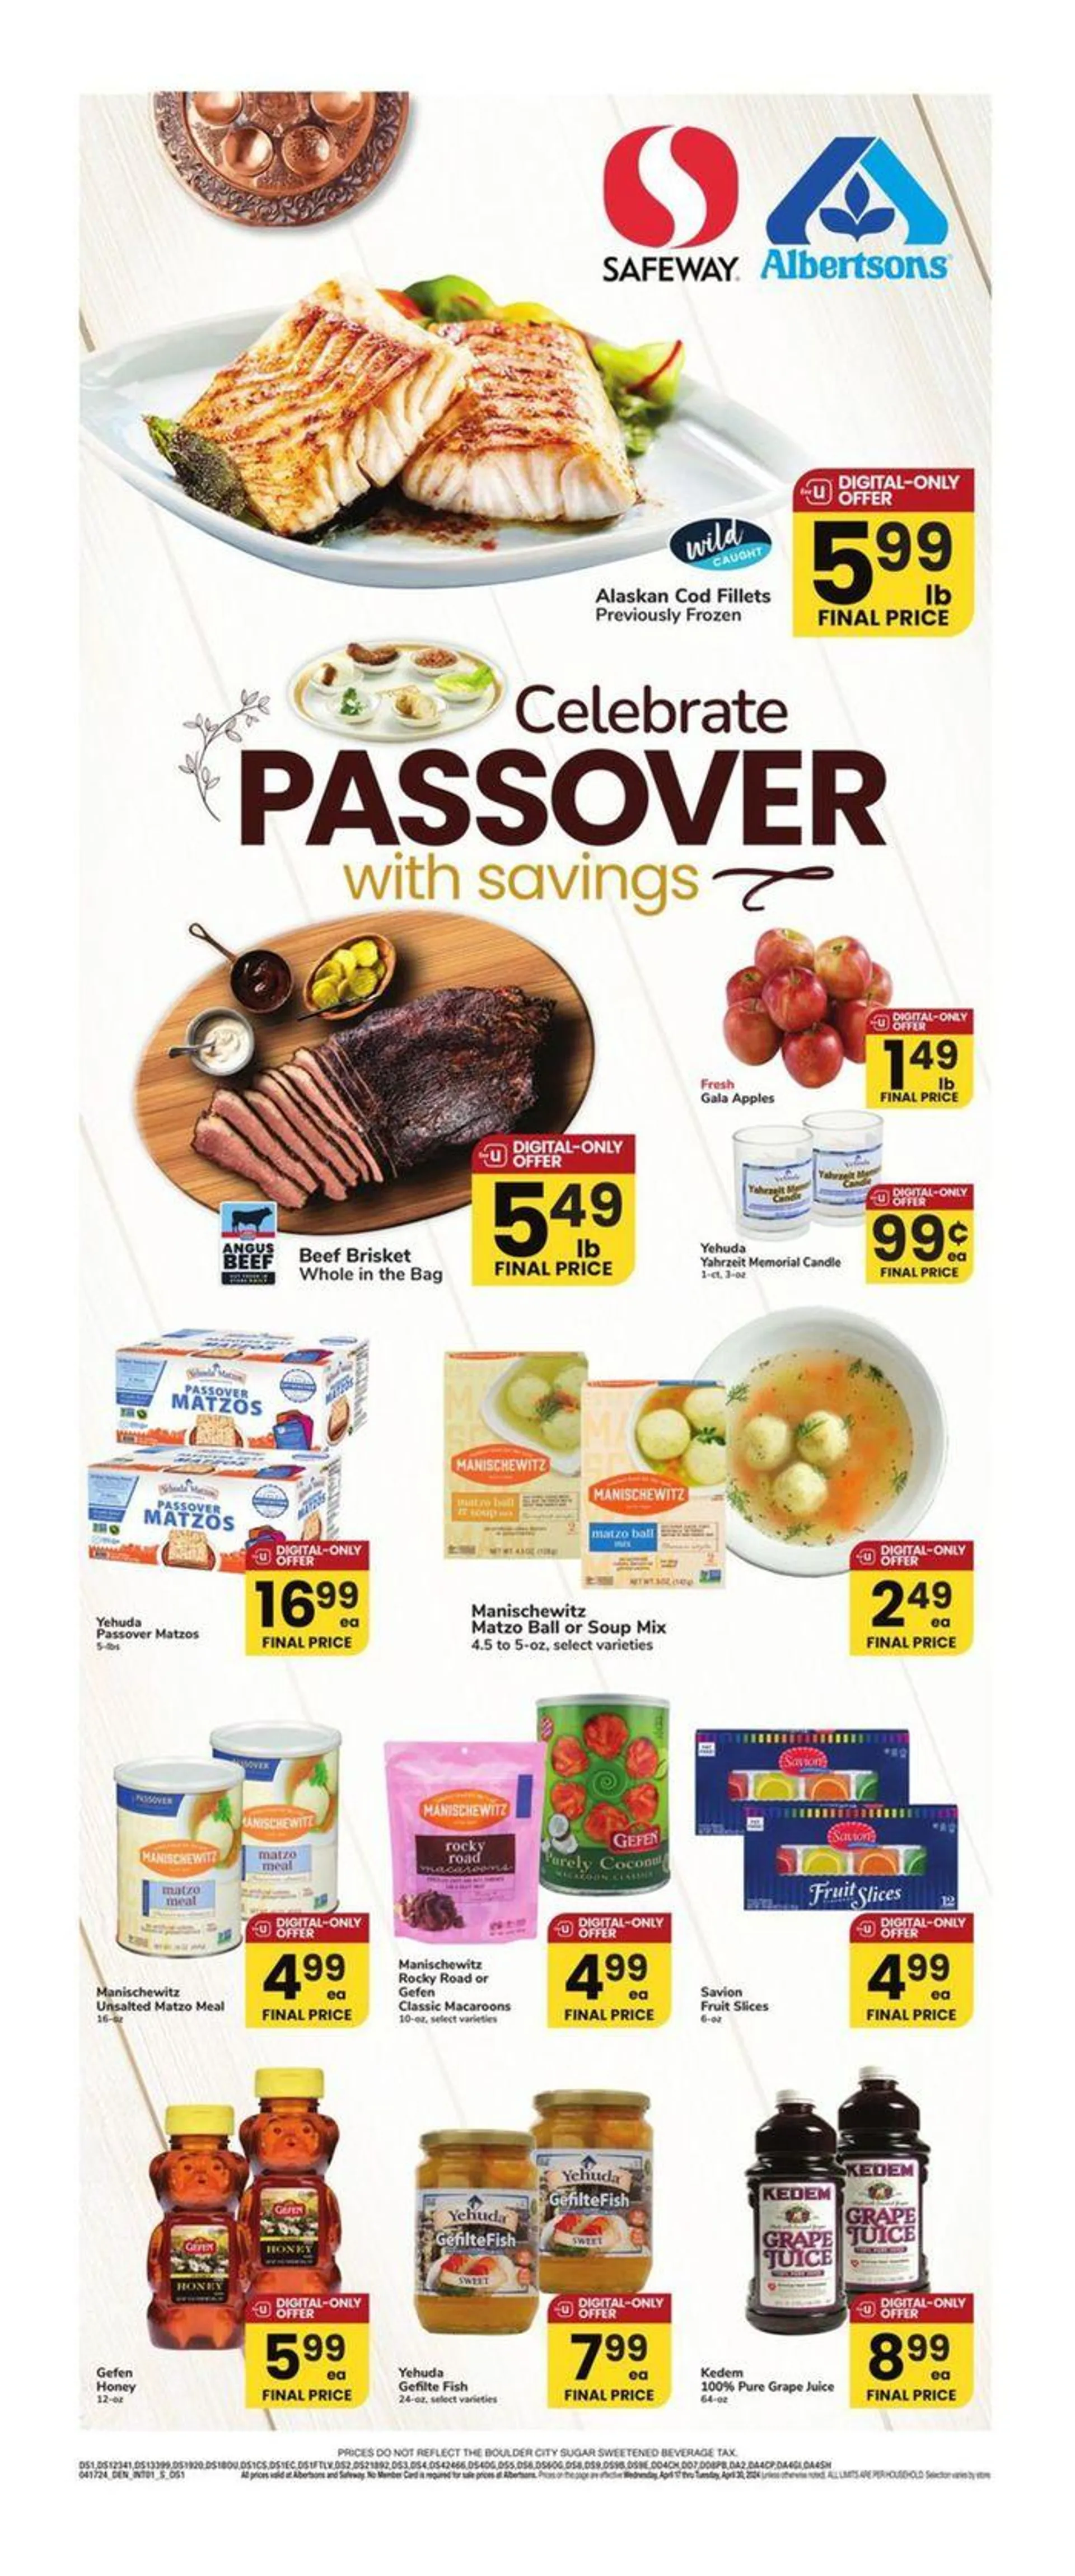 Celebrate Passover With Savings - 1